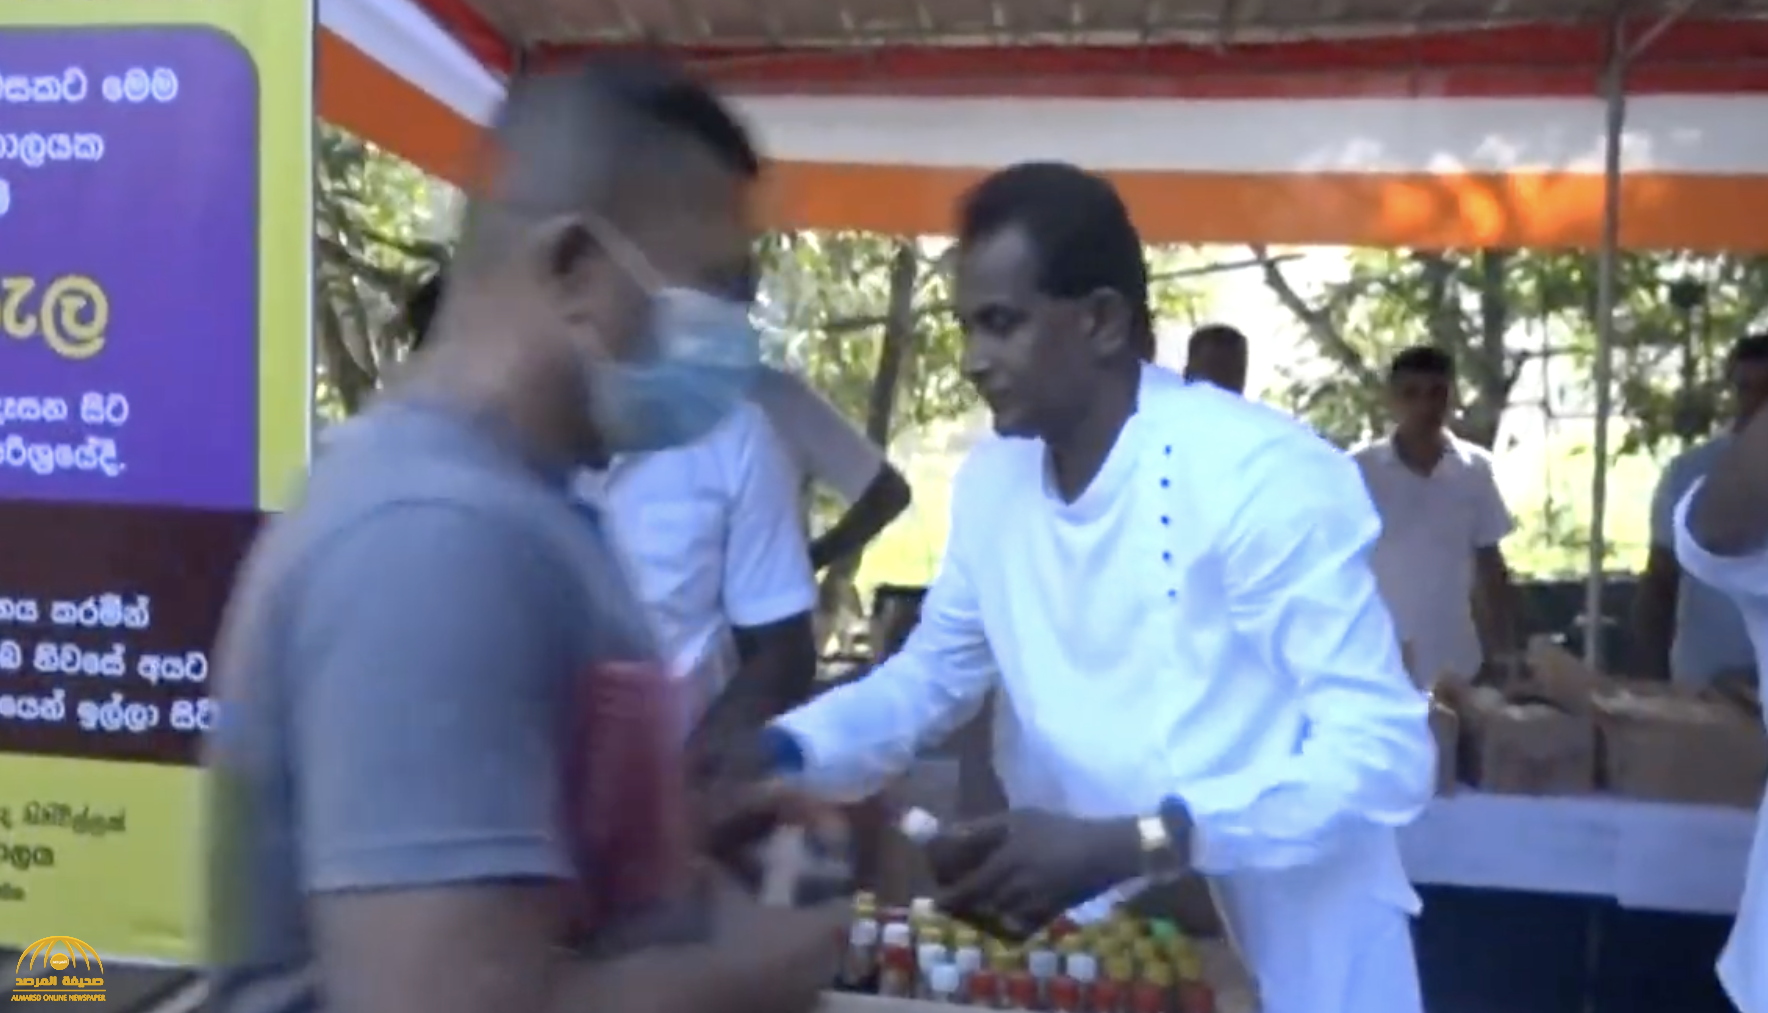 بينهم "وزير الصحة".. شاهد: الآلاف في سريلانكا يحتشدون للحصول على شراب "اخترعته الآلهة" لمواجهة كورونا